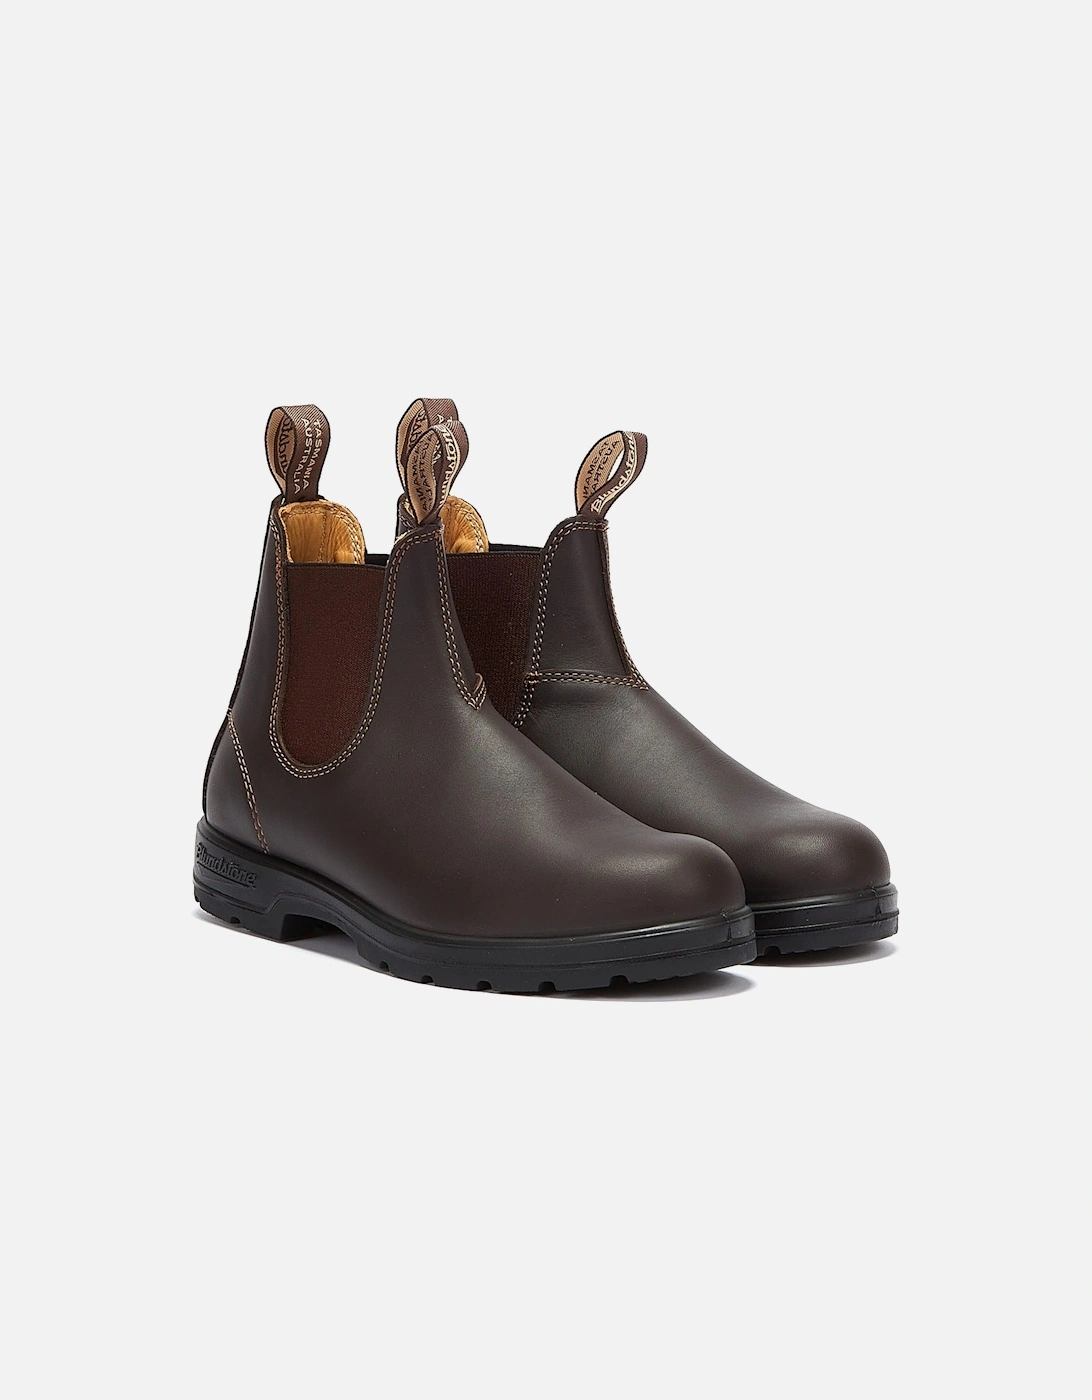 Classics 550 Walnut Brown Boots, 9 of 8